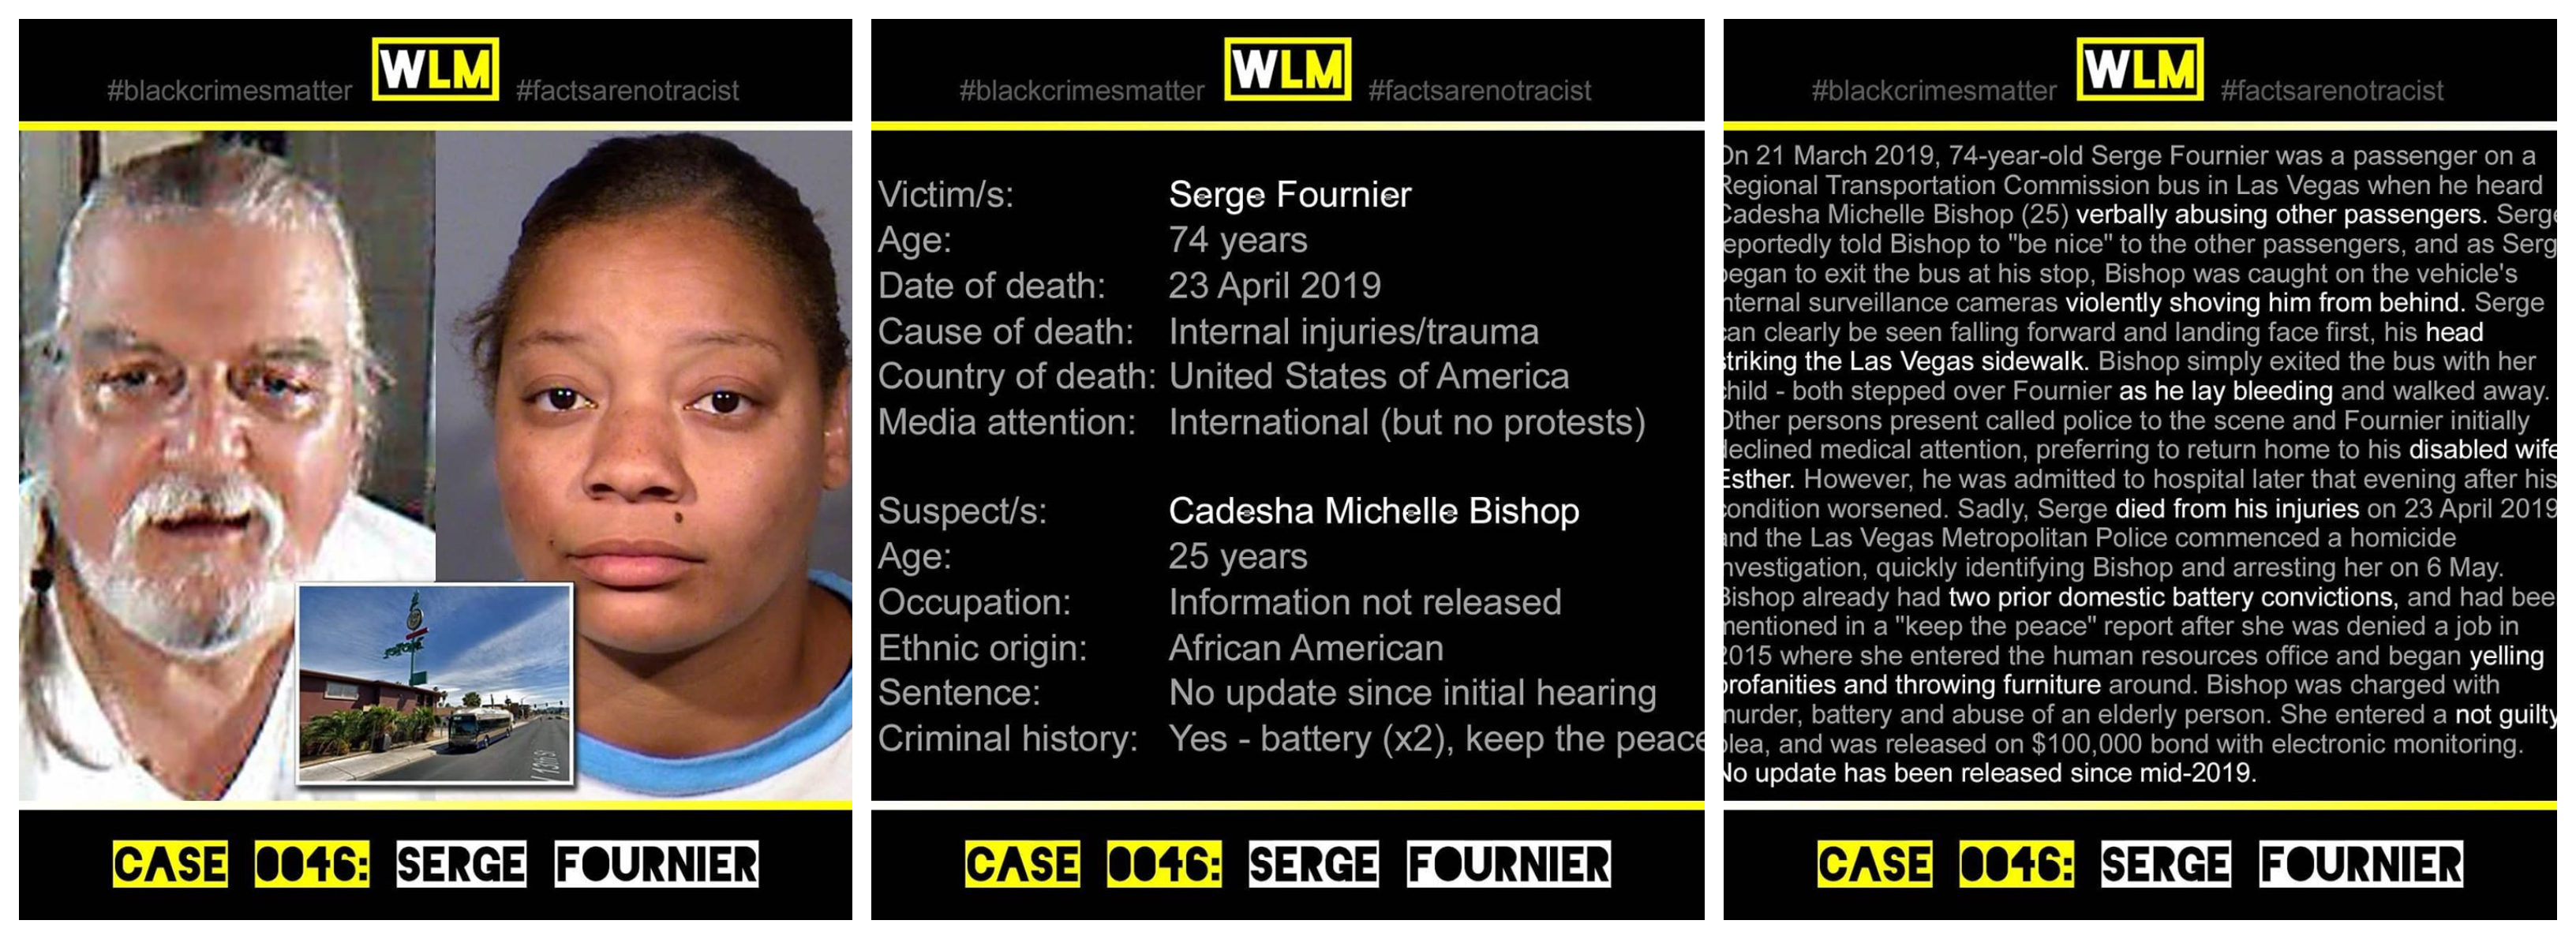 case-046-serger-fournier